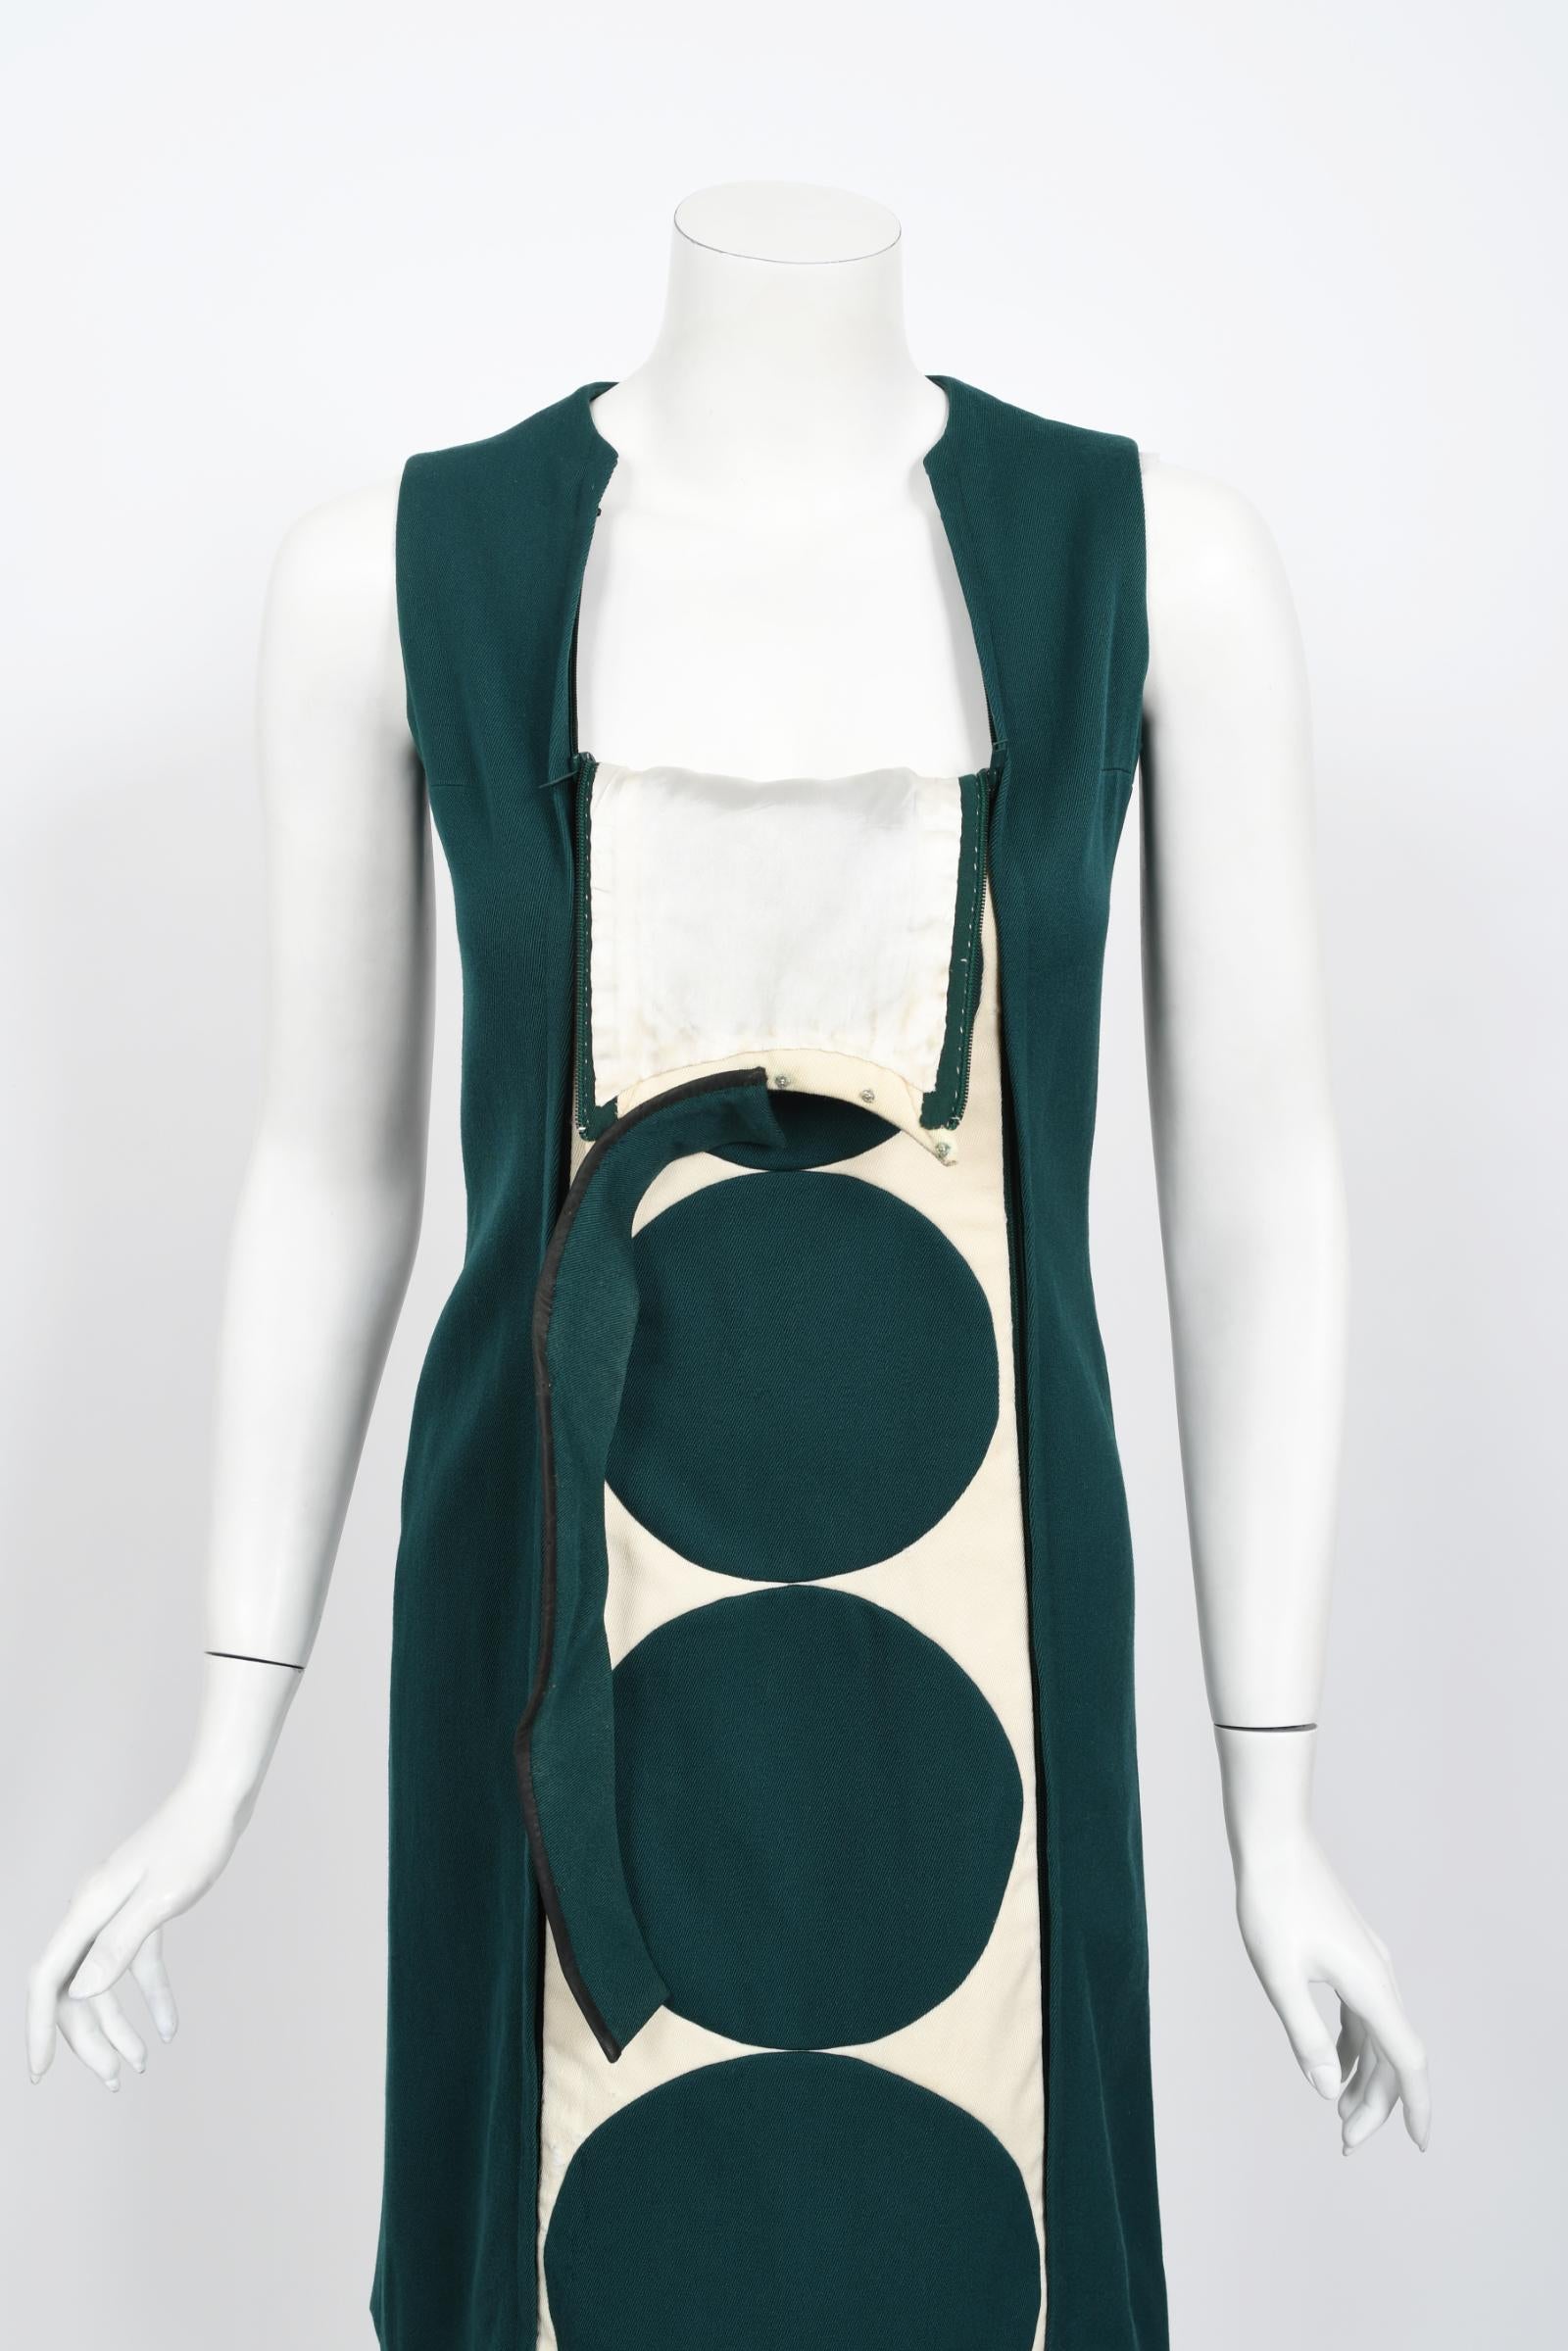 Vintage 1966 Jacques Esterel Haute Couture Documented Teal Blue Op-Art Mod Dress For Sale 6